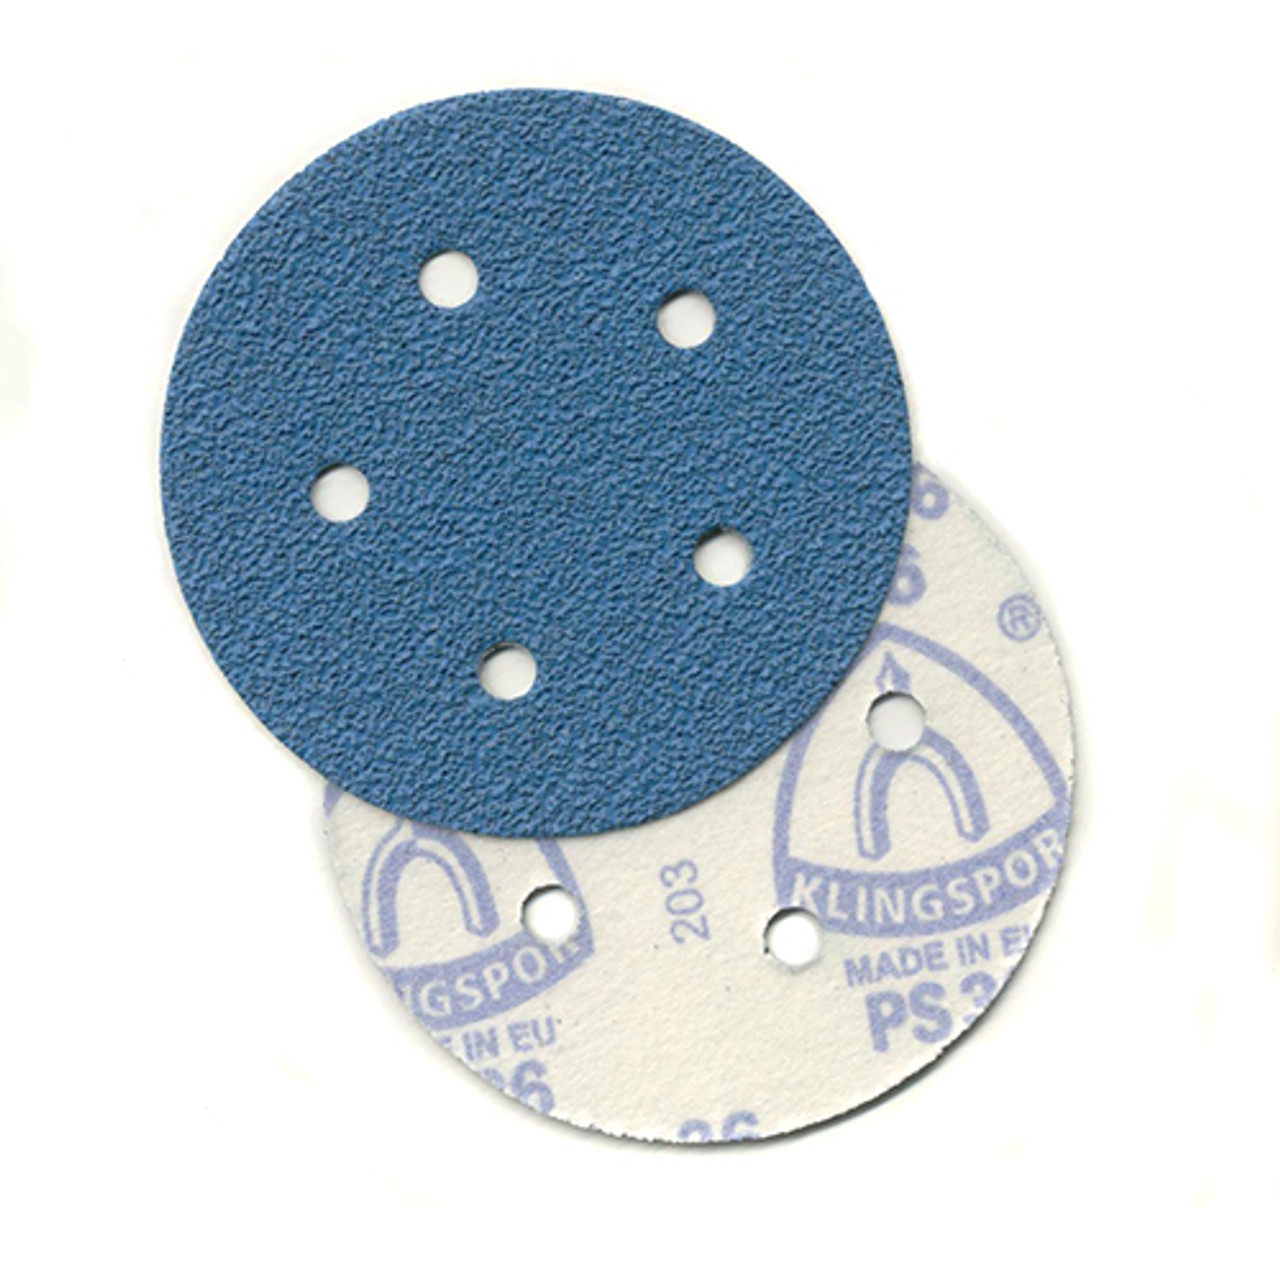 Klingspor Abrasives AZ-Plus Alumina Zirconia, 5"x 5 Hole, Hook & Loop, 40 Grit Discs, 50pk